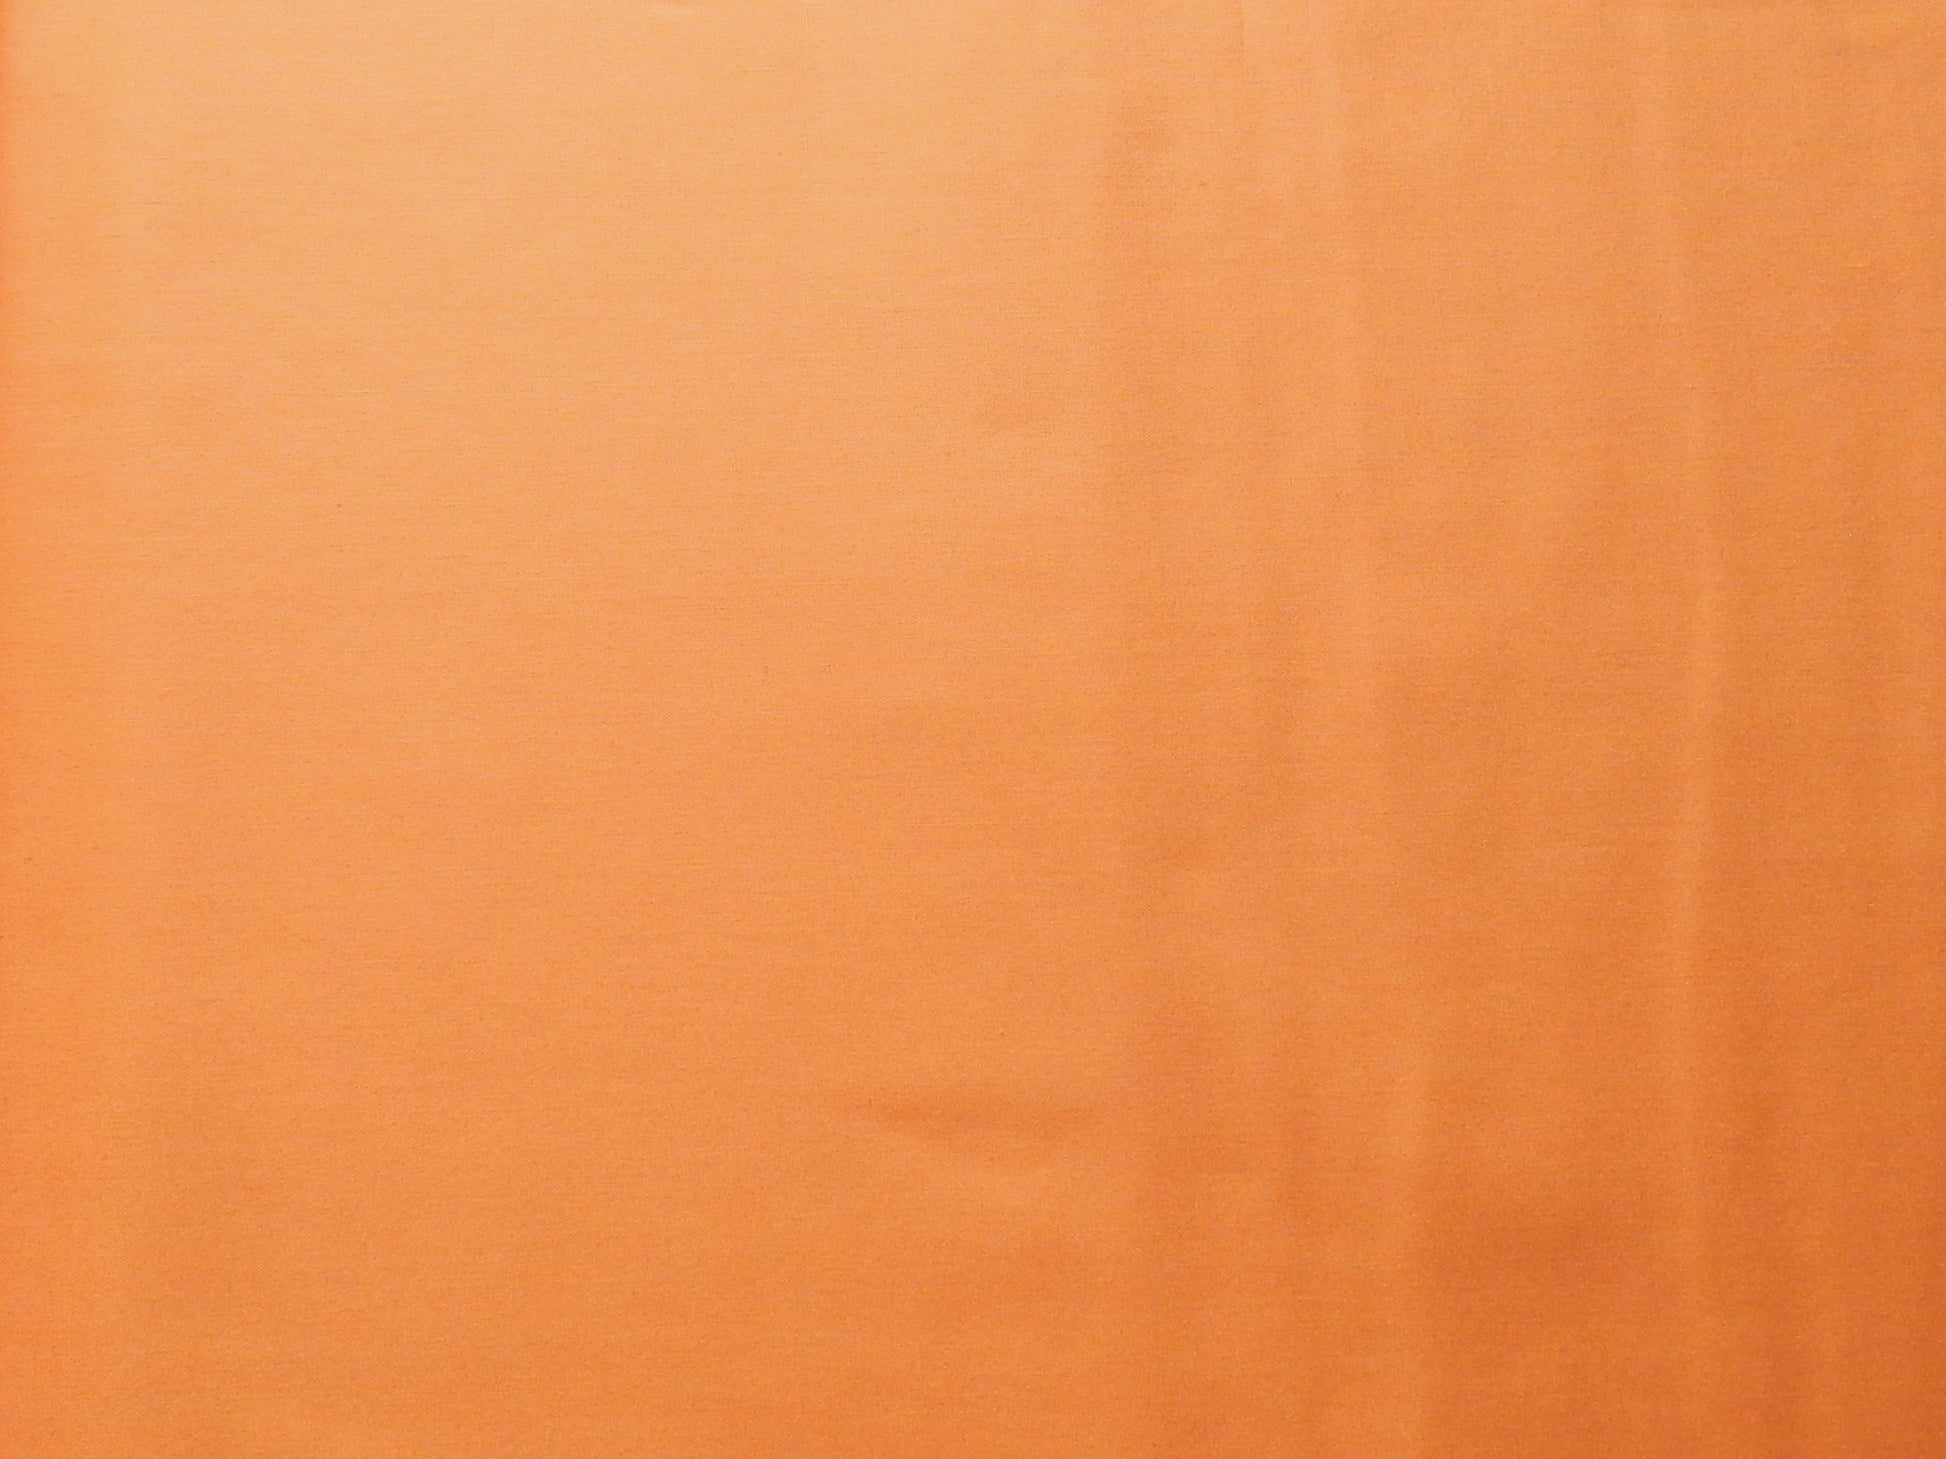 painters palette tangerine orange quilting fabric